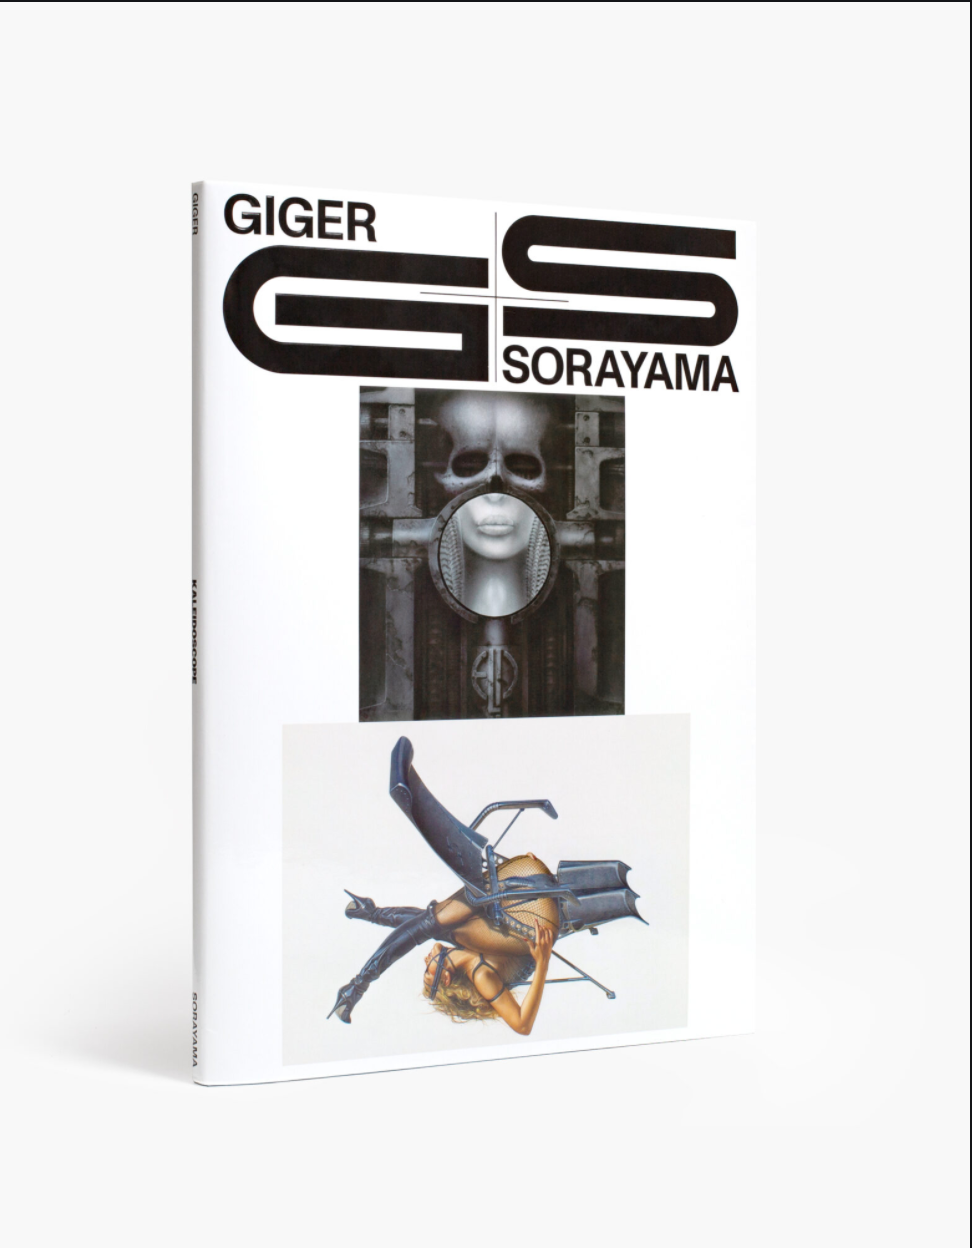 GIGER×SORAYAMA Signed by Sorayama